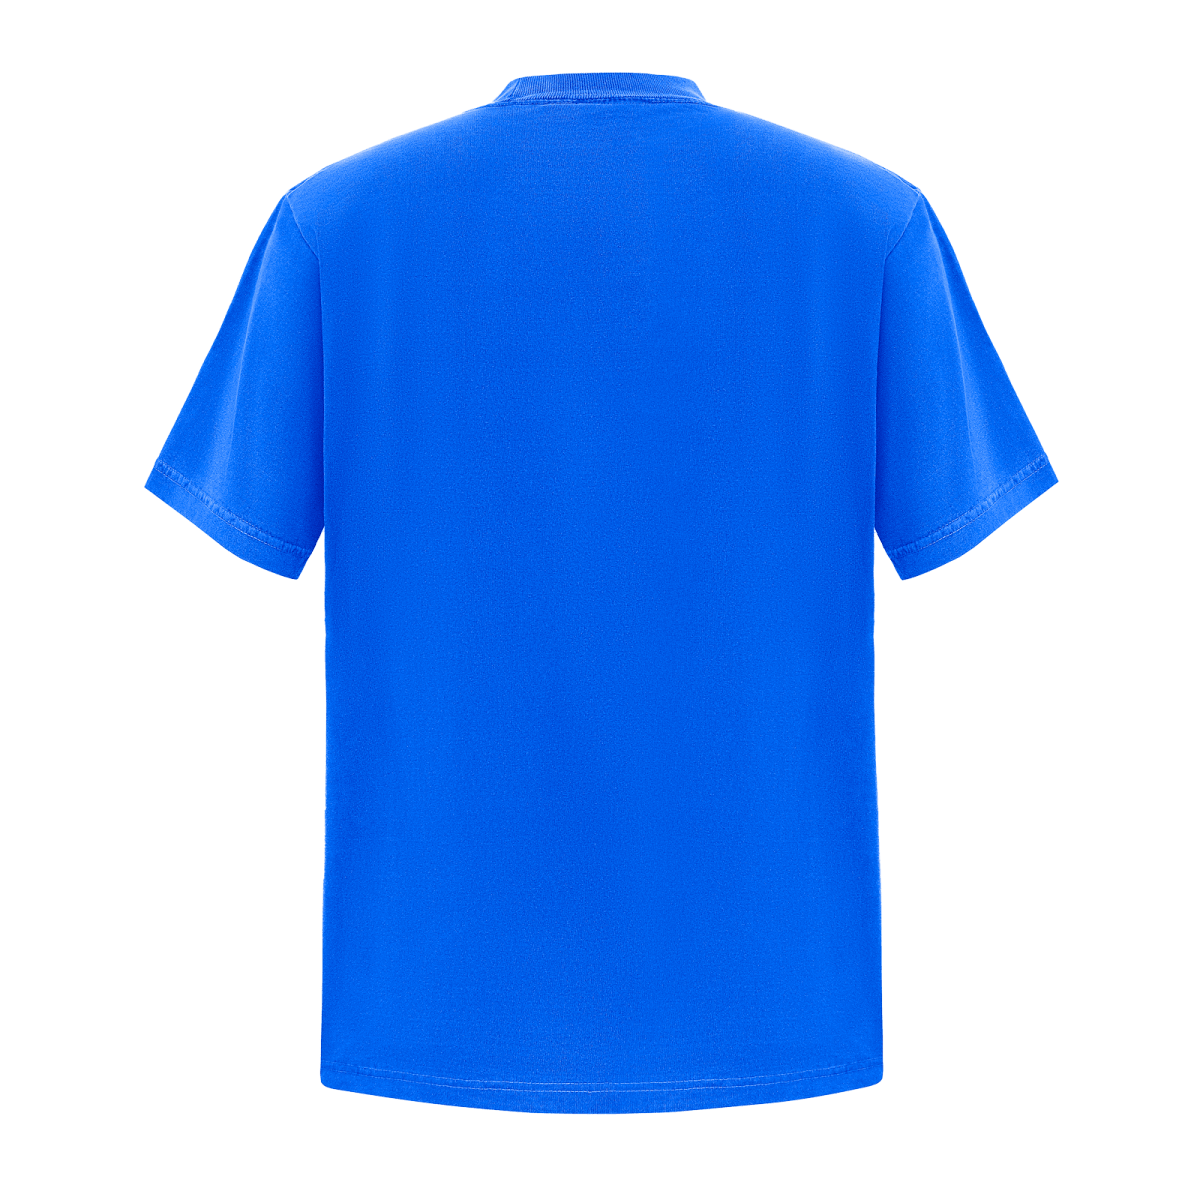 Garment Dye T-Shirt - Standard Size - Royal